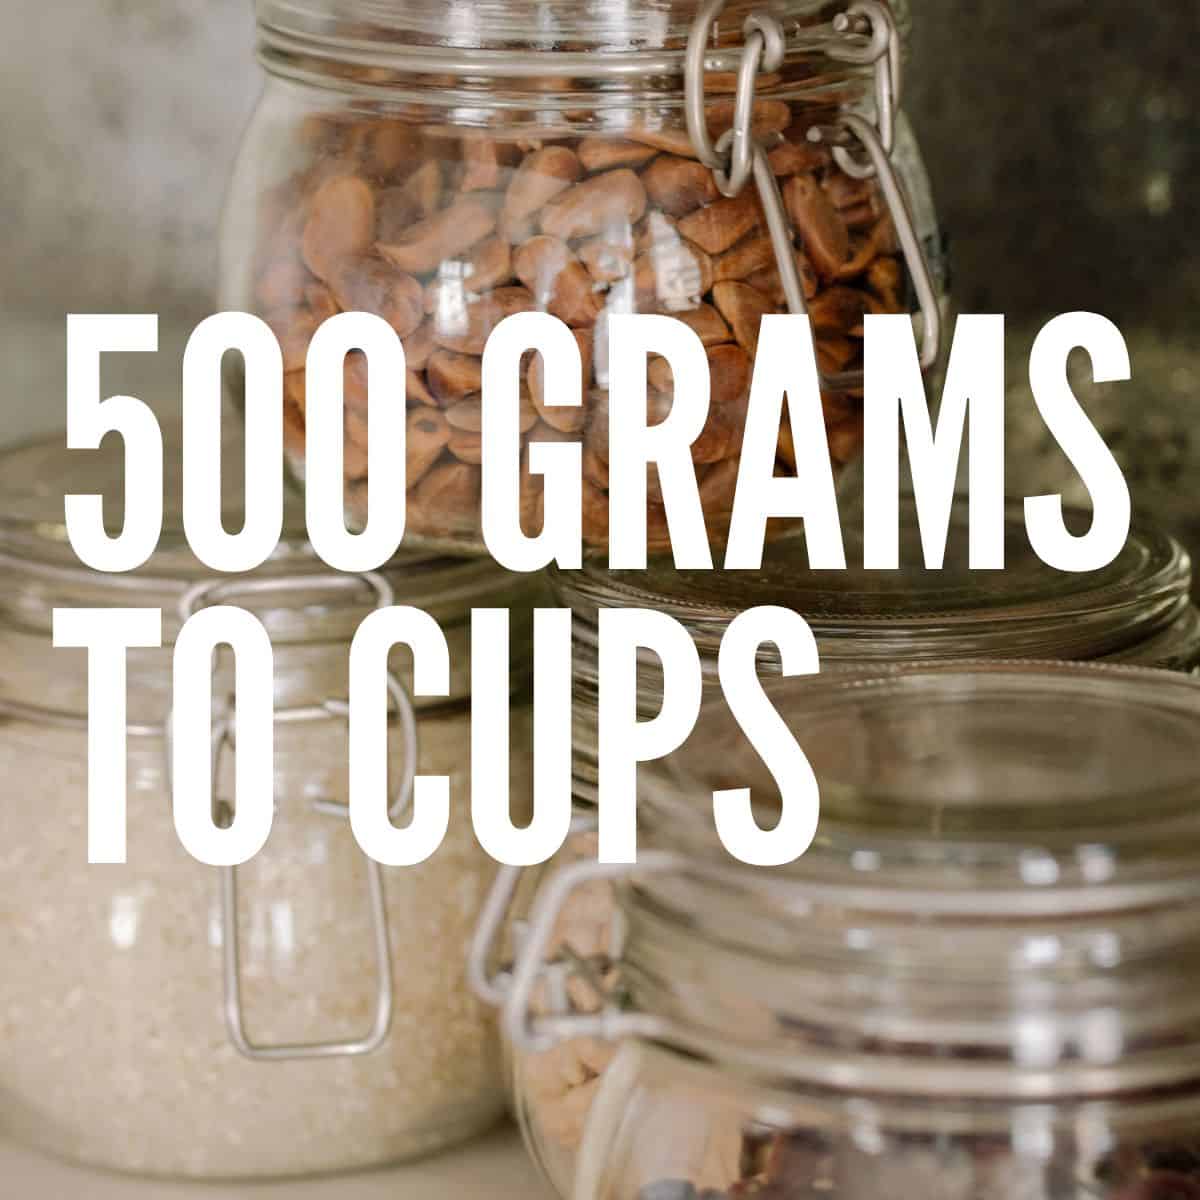 500g flour cups